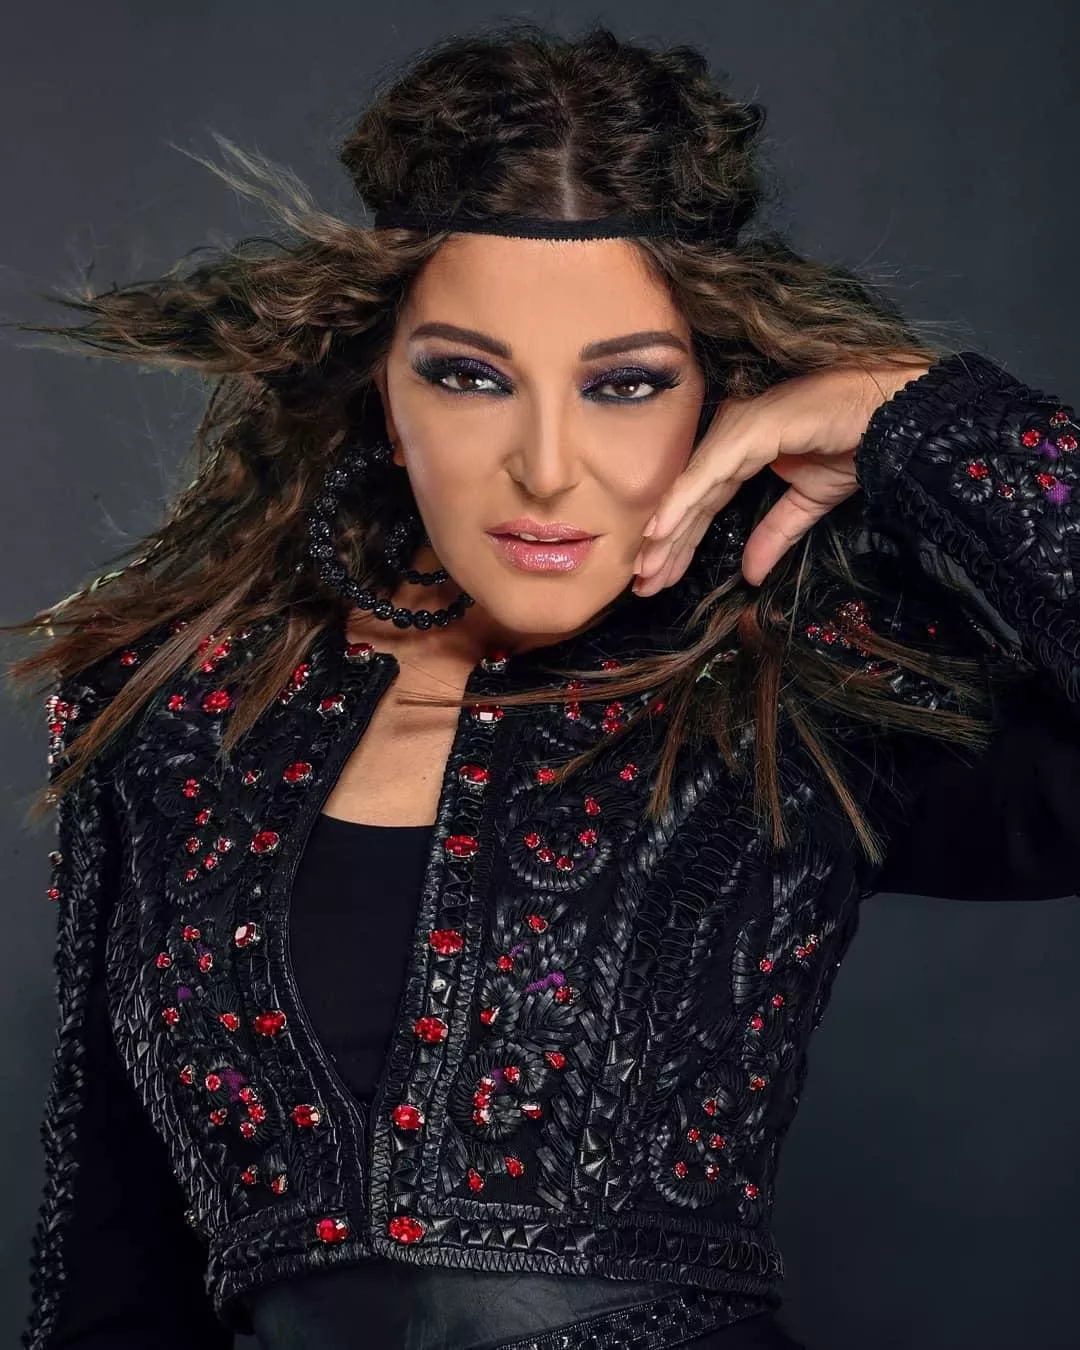 سميرة سعيد في برنامج ذا فويس بموسمه الخامس: محاولات غير ناجحة لخلق ستايل شبابي